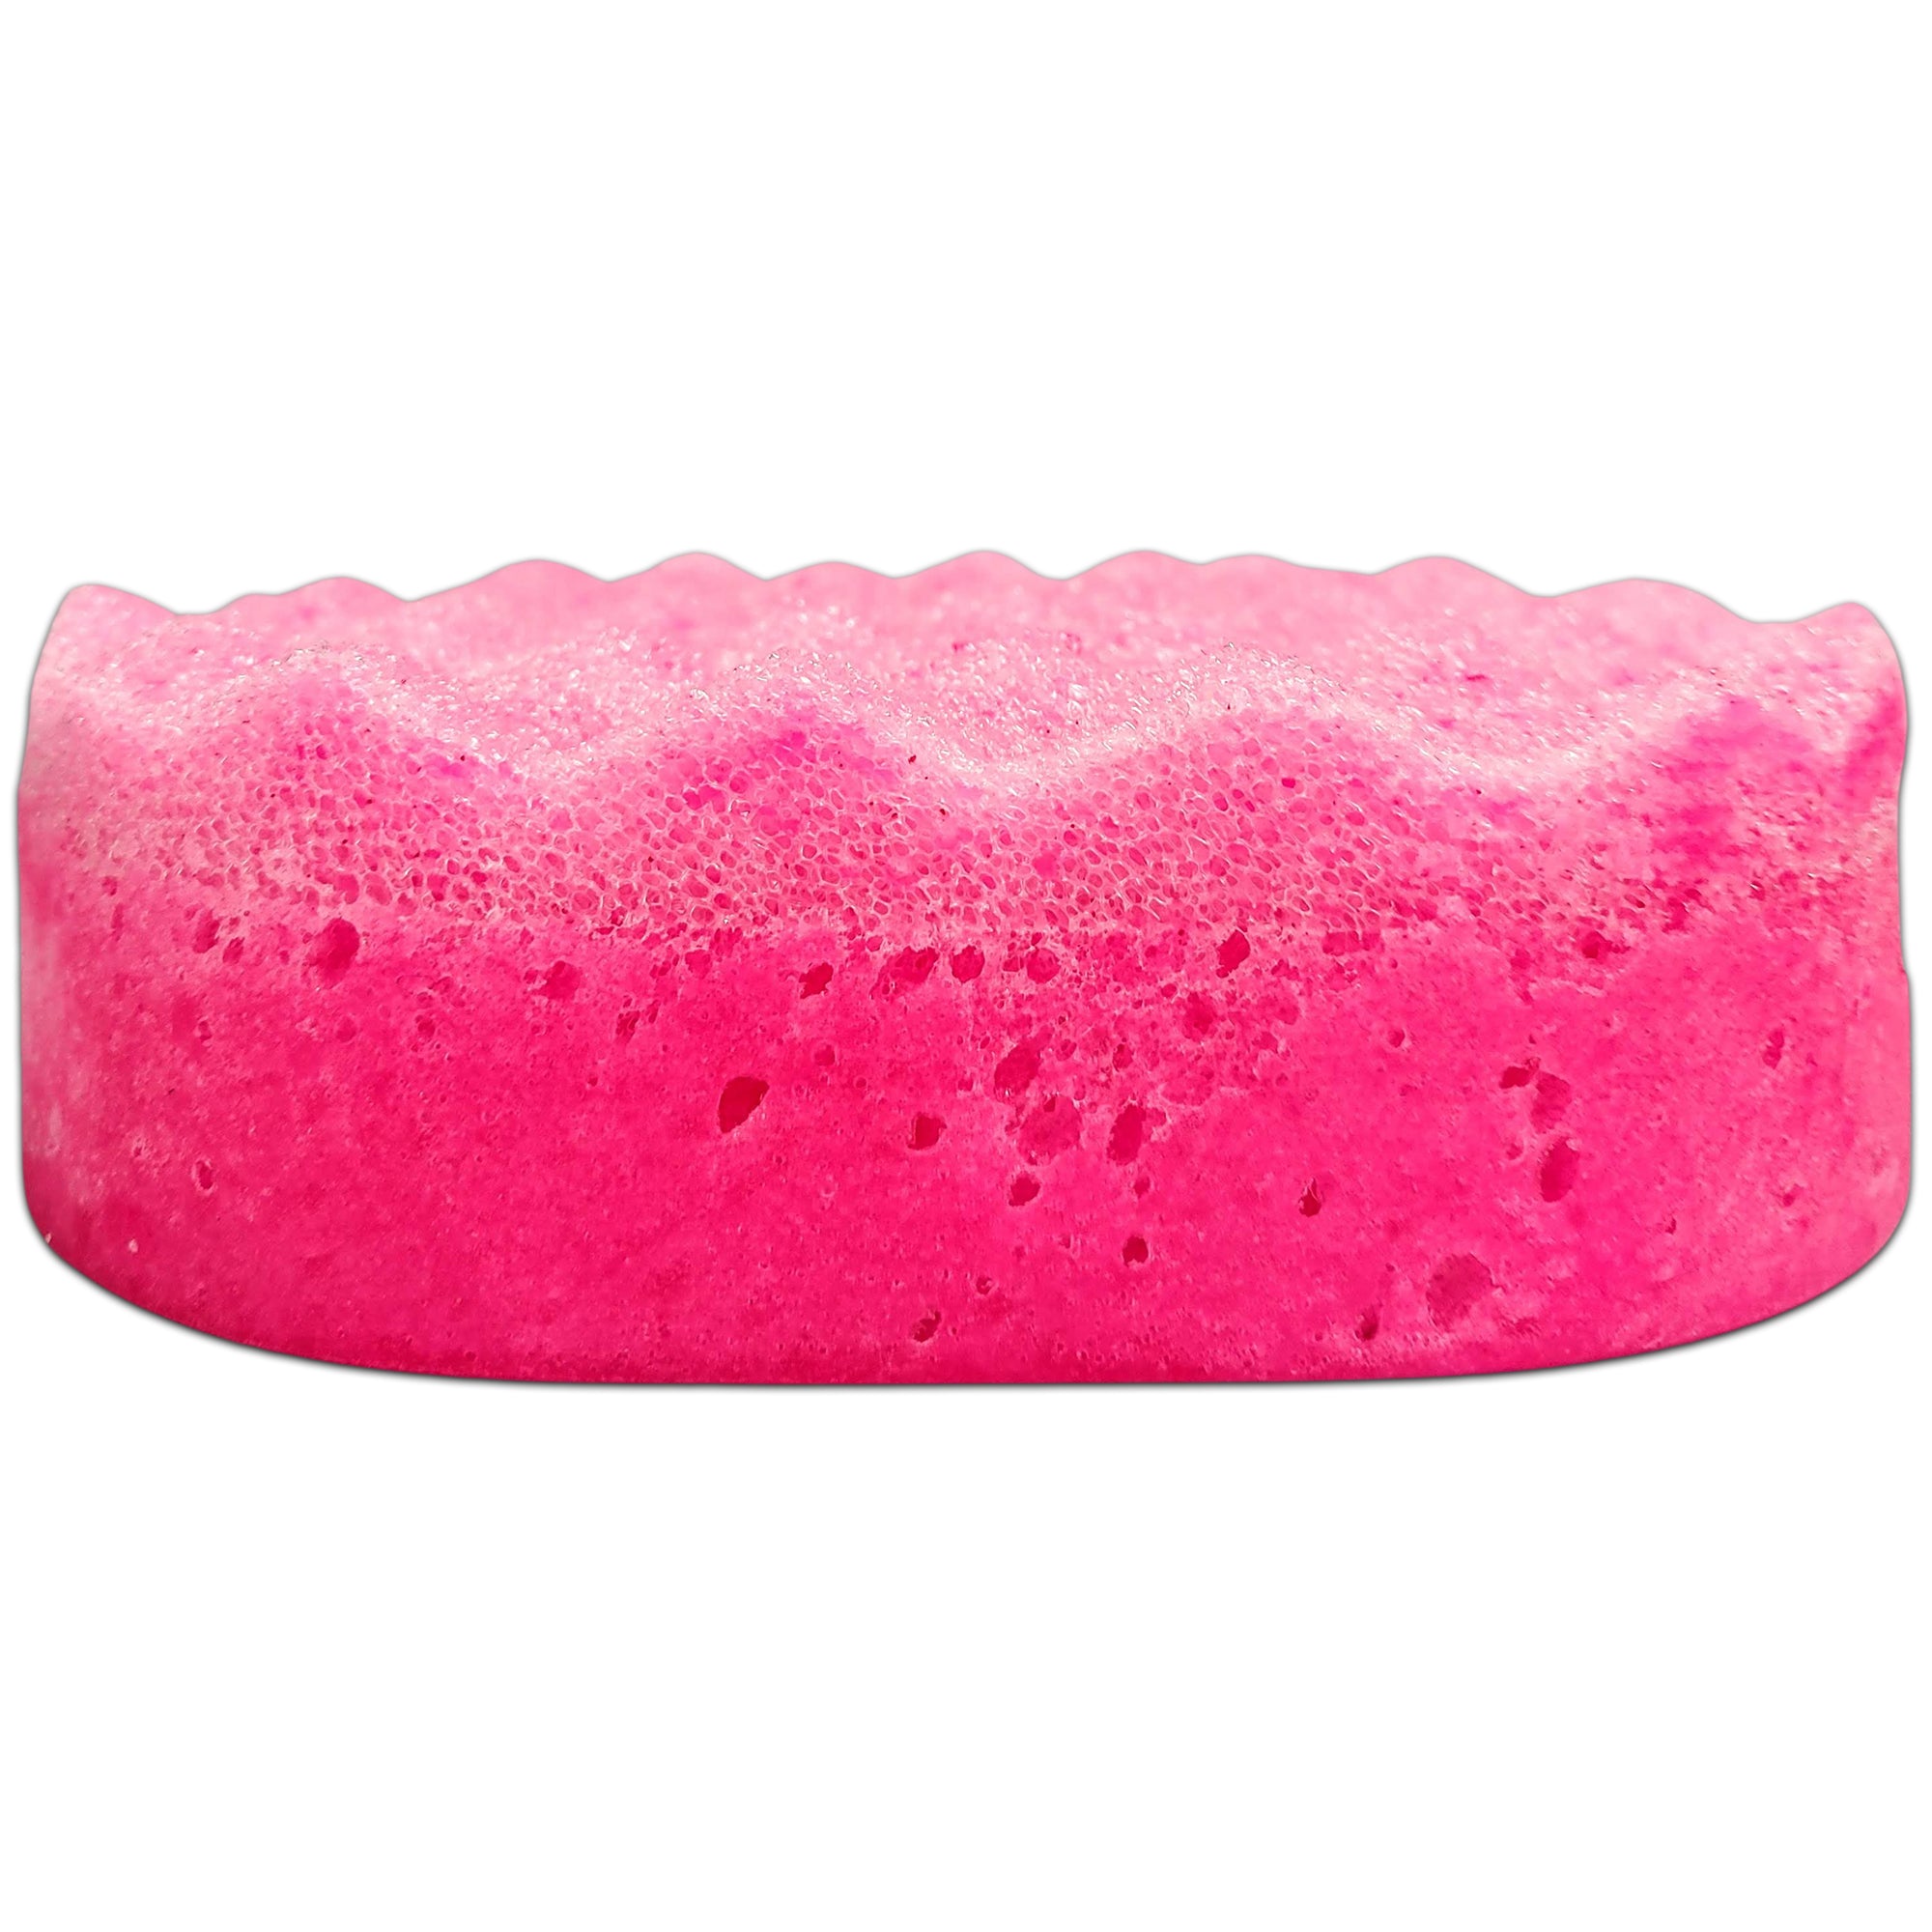 Belle Soap Sponges